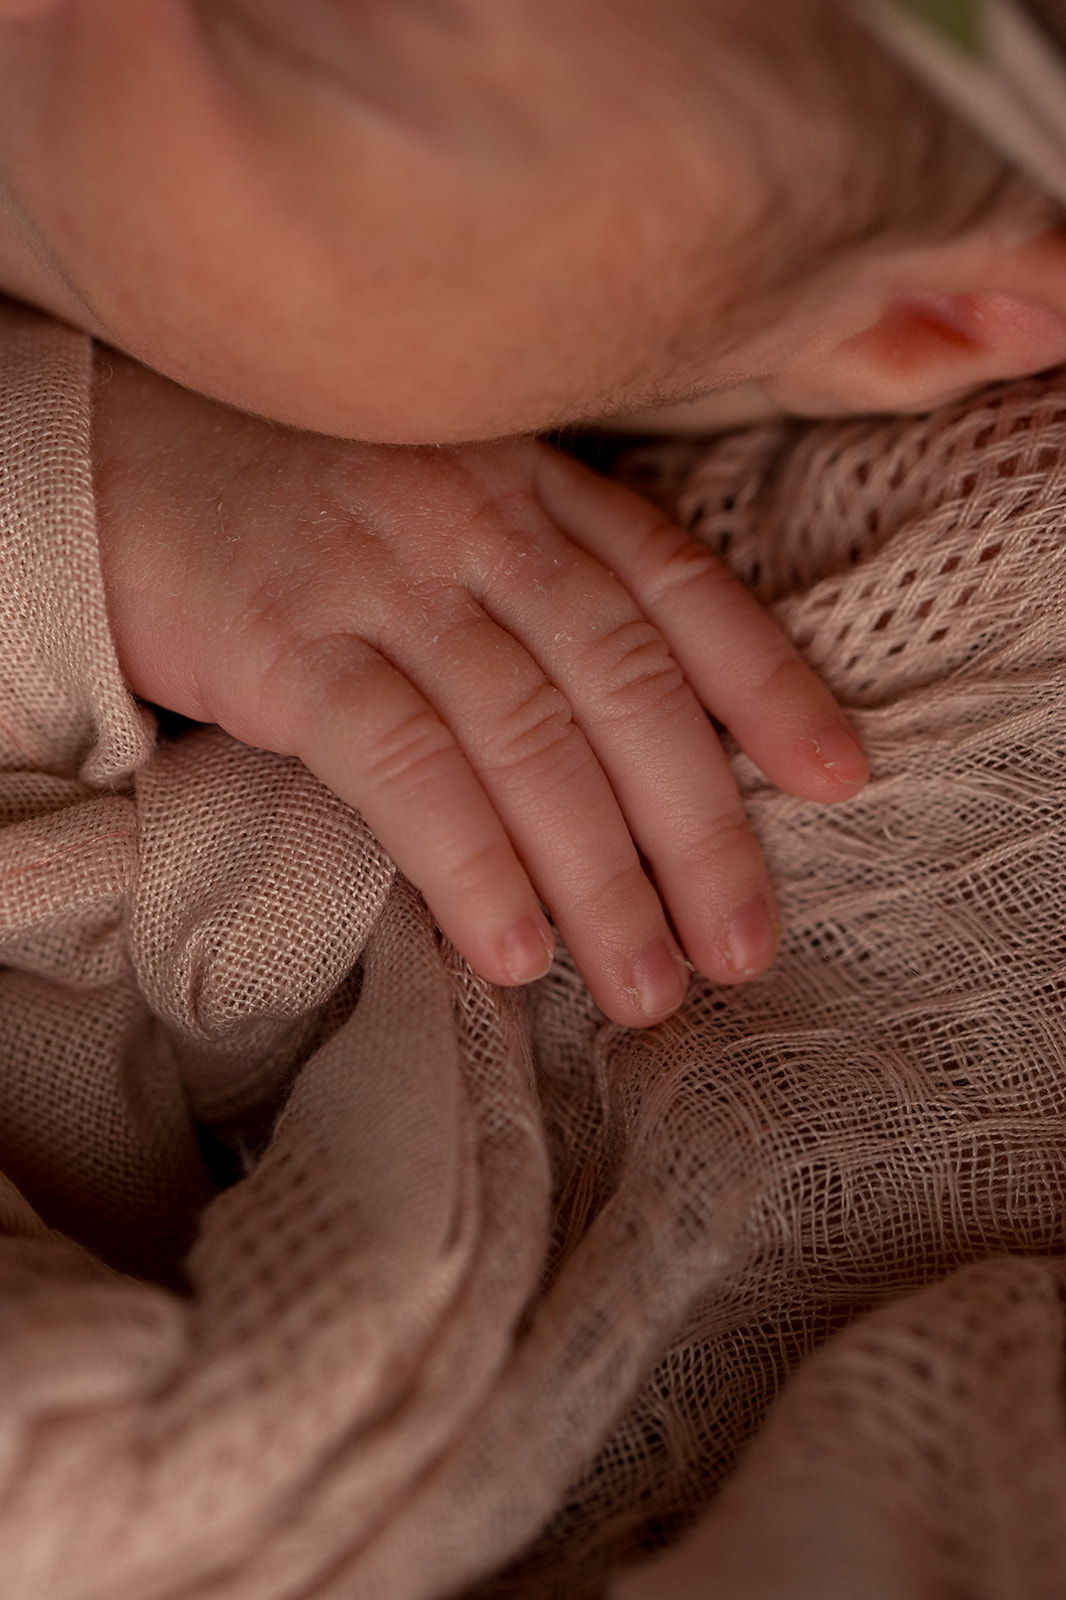 newborn baby hand close up macro detail